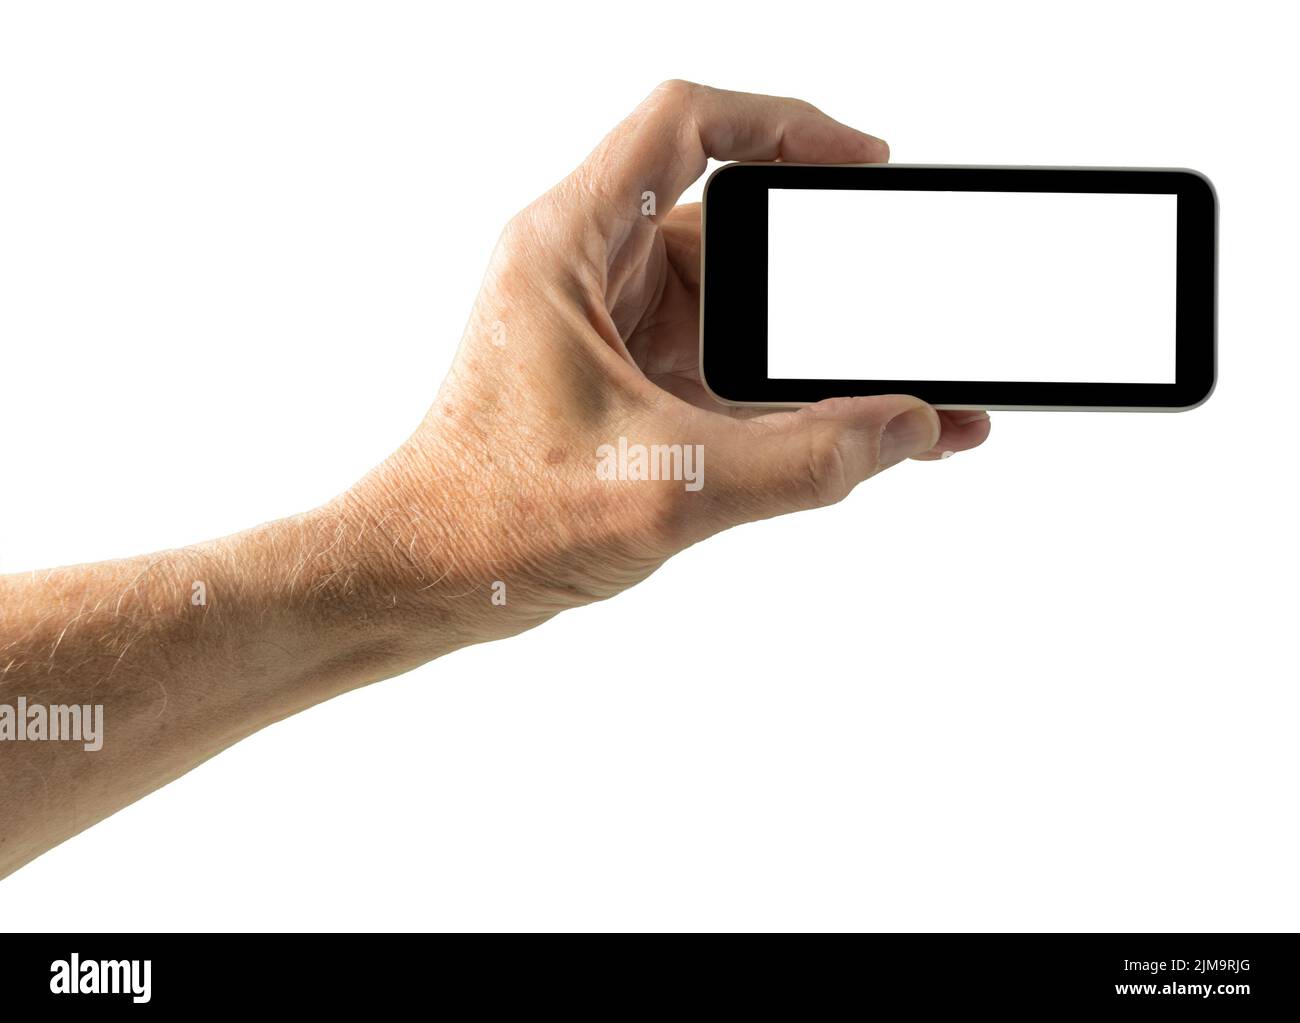 Imagen aislada de la mano con la pantalla del smartphone Foto de stock